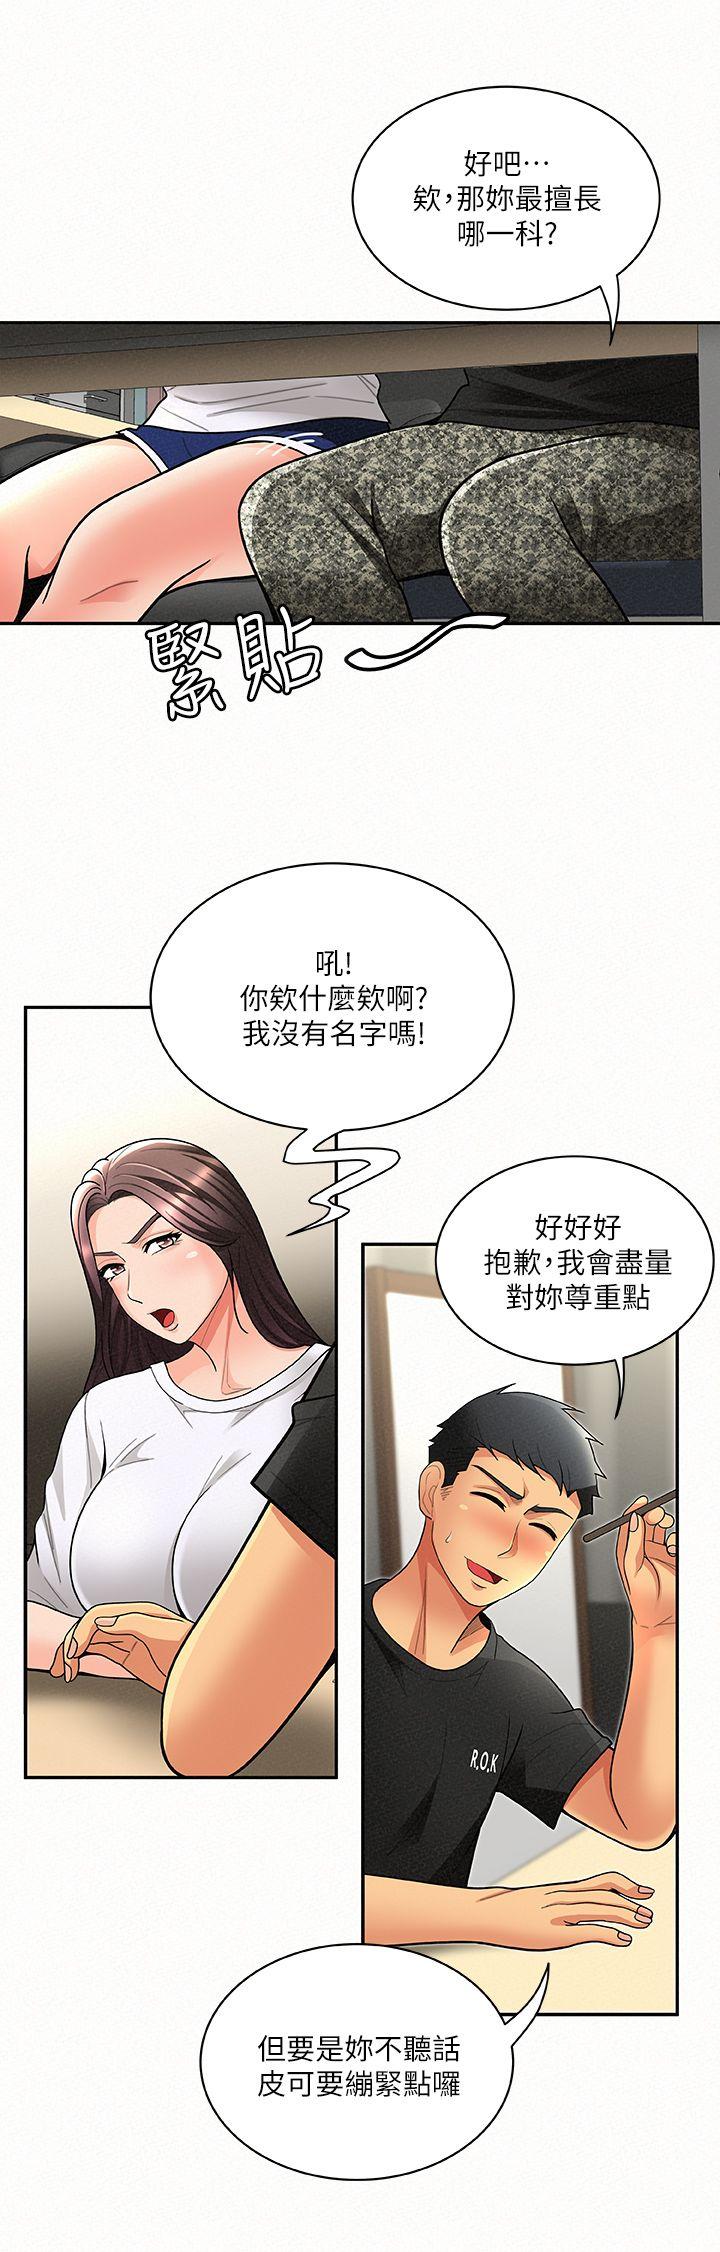 韩国污漫画 報告夫人 第5话-有其母必有其女 20